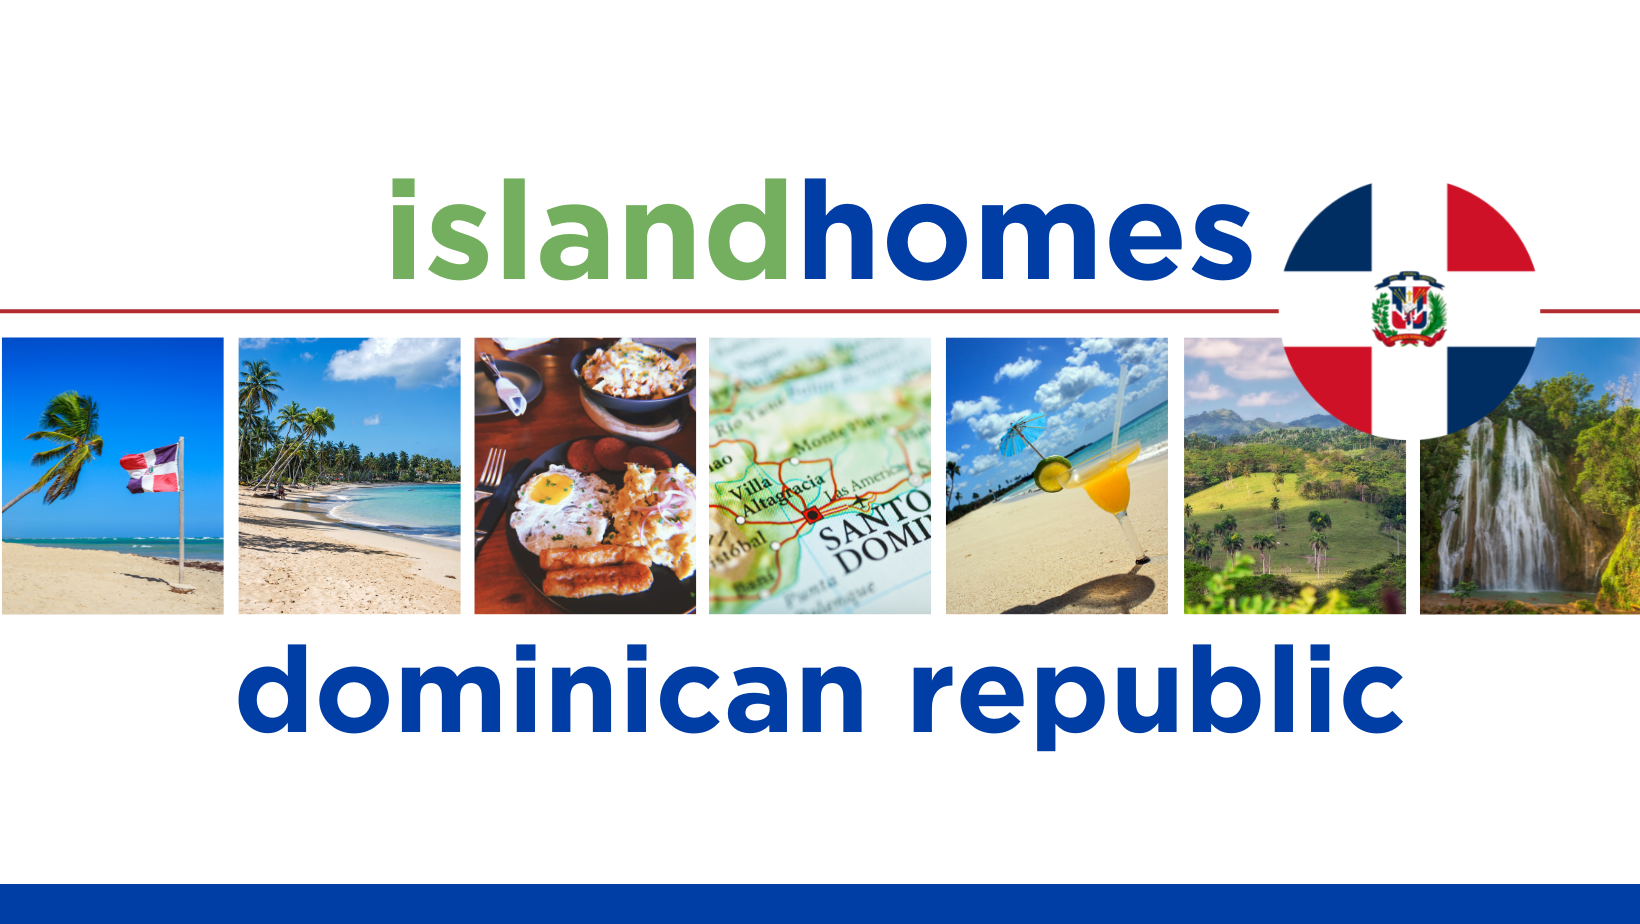 Dominican Republic Real Estate